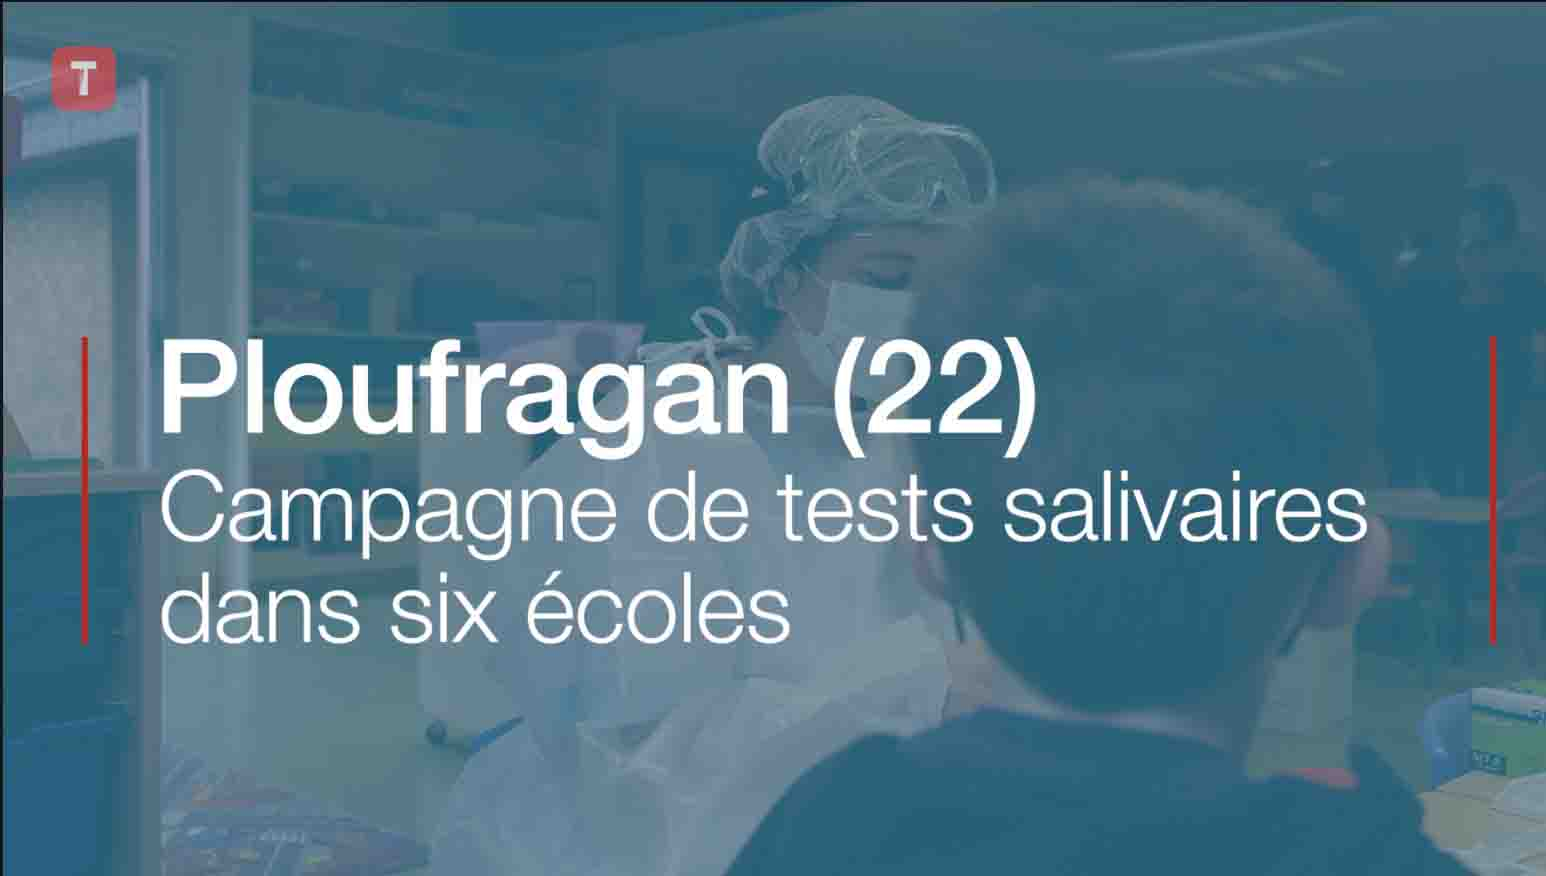 Ploufragan (22). Campagne de tests salivaires dans six écoles (Le Télégramme)